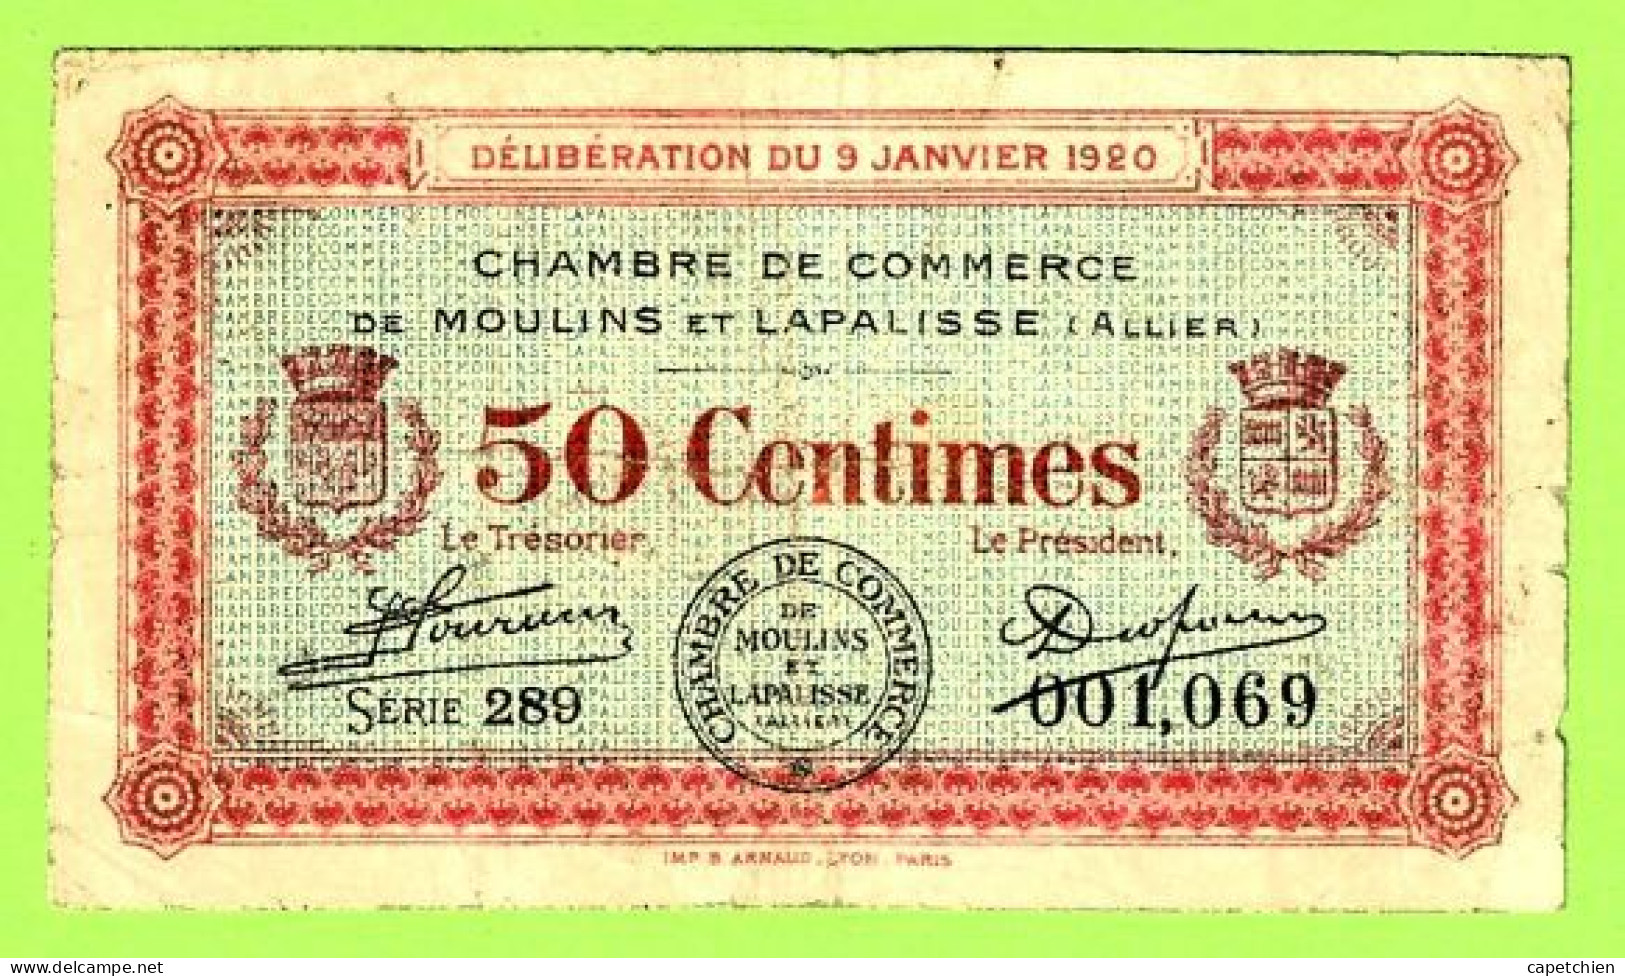 FRANCE /  CHAMBRE De COMMERCE De MOULINS & LAPALISSE / 50 CENTIMES / 9 JANVIER 1920  N° 001,069 / SERIE 289 - Chambre De Commerce